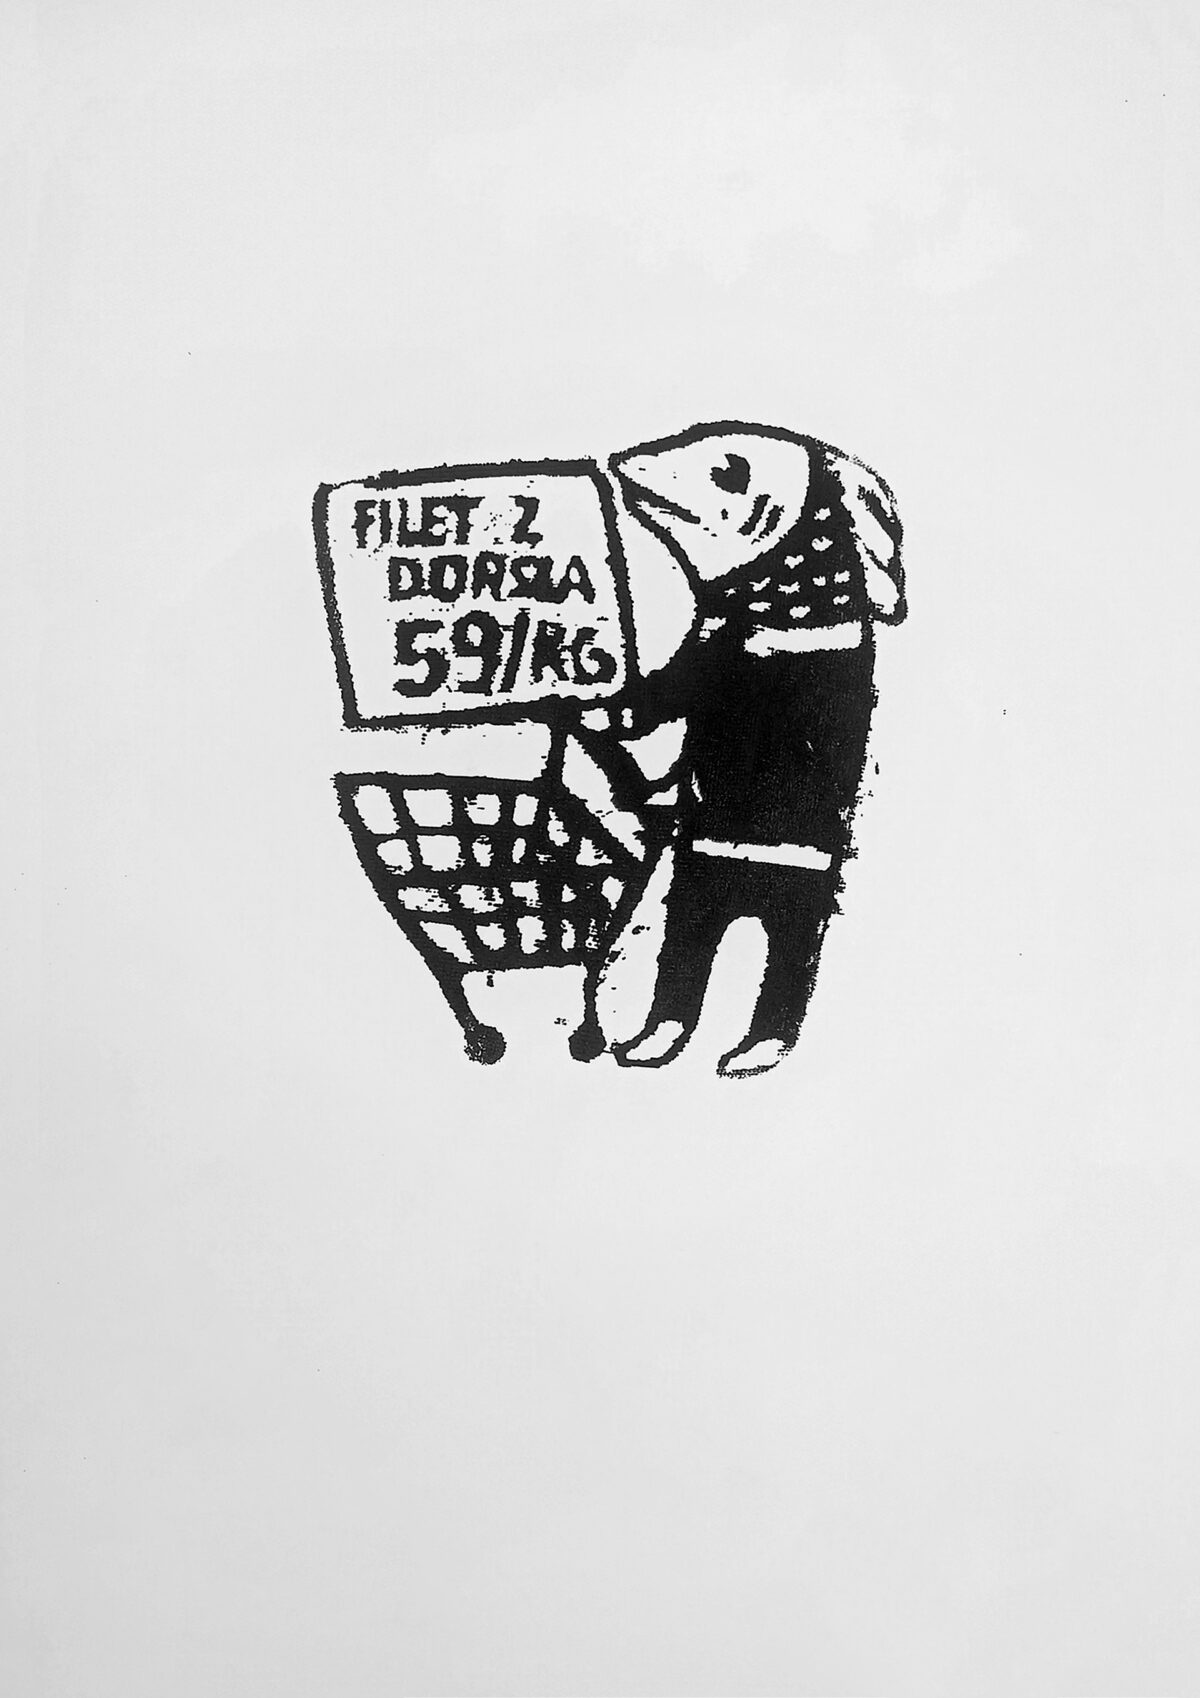 Postać z głową ryby, pcha wózek na zakupy. W tle widnieje szyld z napisem: Filet z dorsza 59/kg.